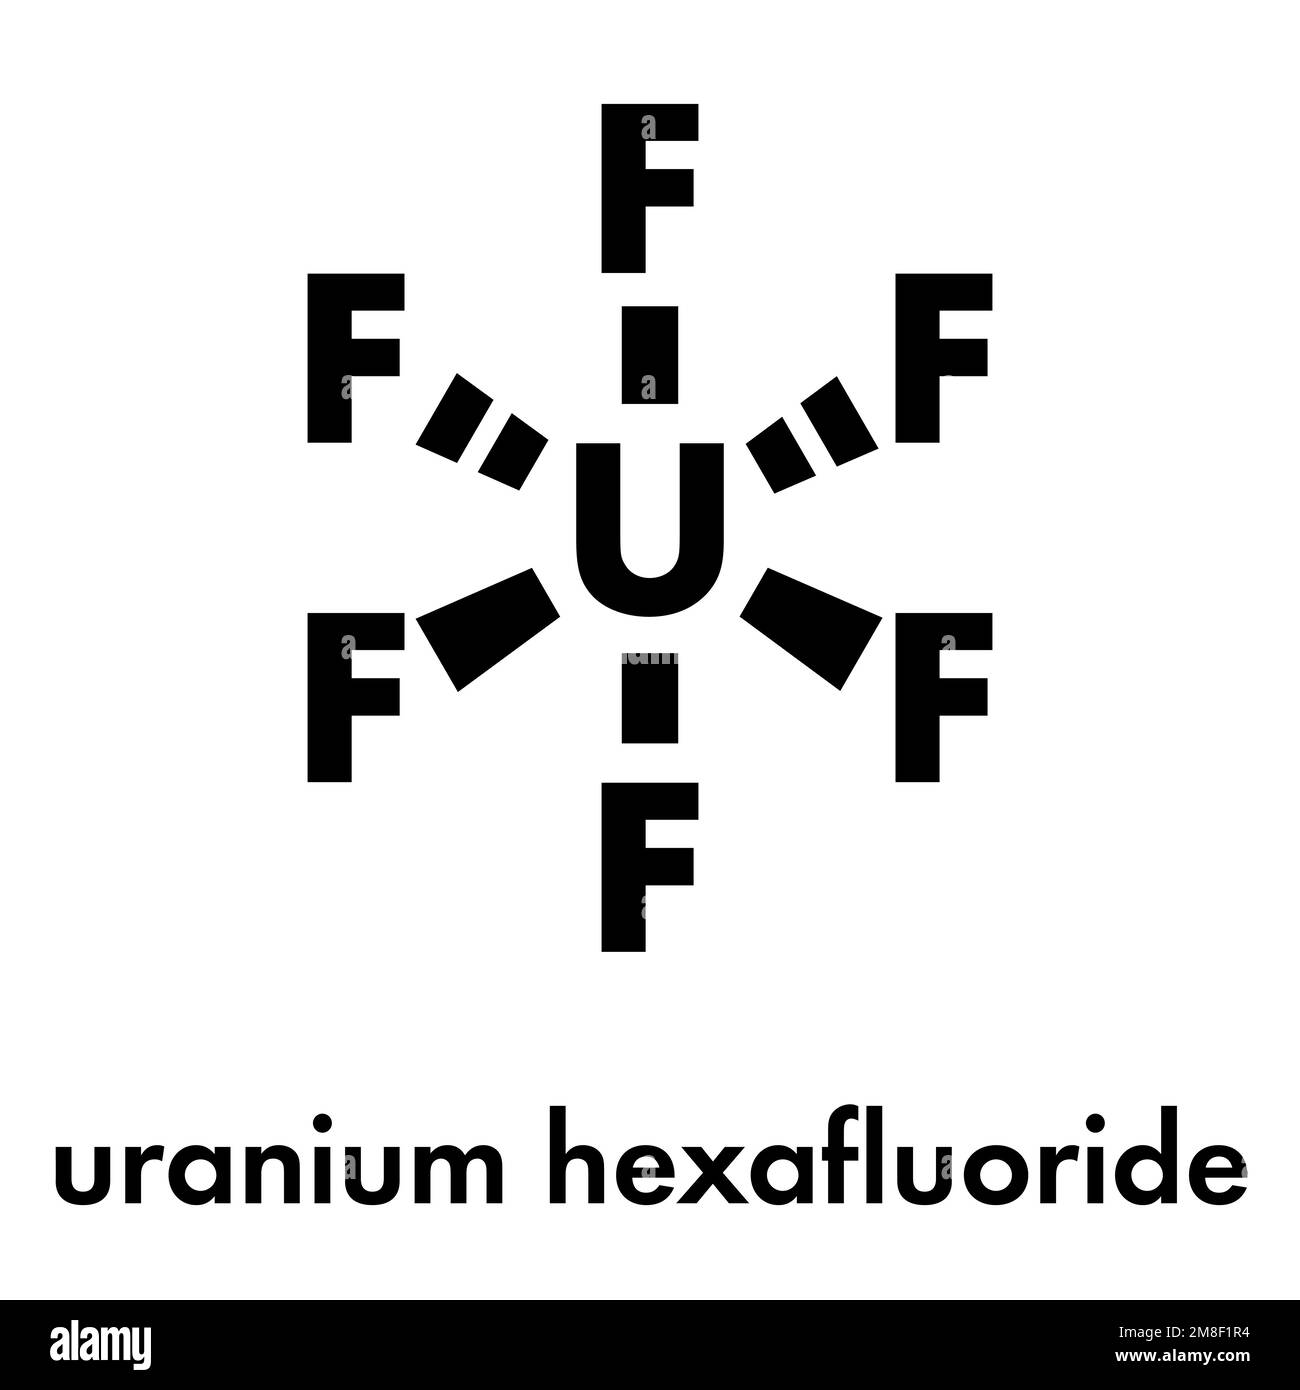 Uranium hexafluoride. Volatile uranium compound that is used for uranium enrichment in gas centrifuges. Skeletal formula. Stock Vector